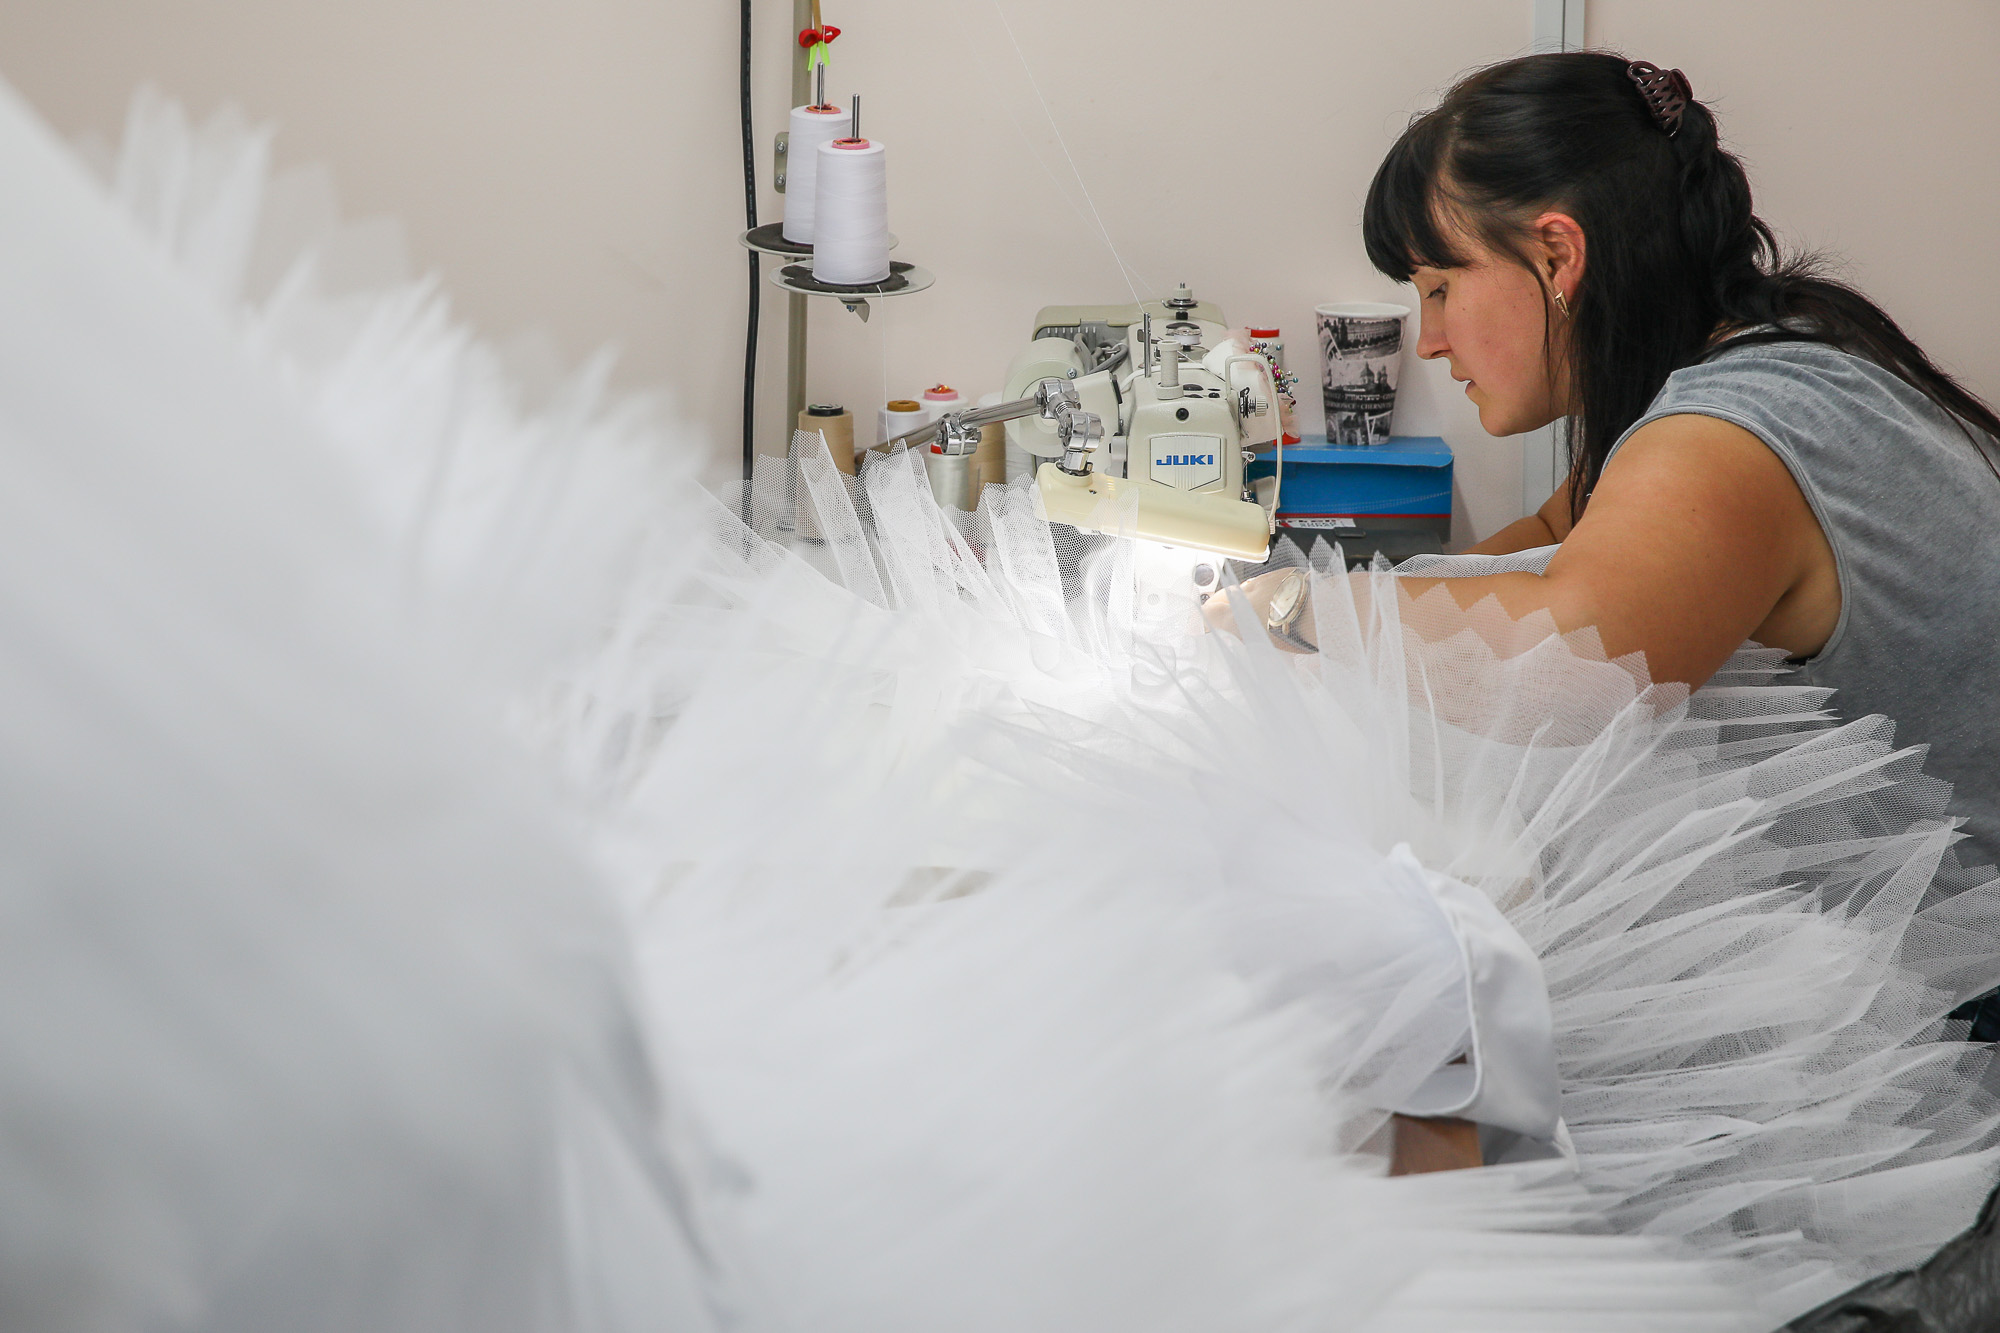 A seamstress works on a new wedding dress. (Volodymyr Petrov)